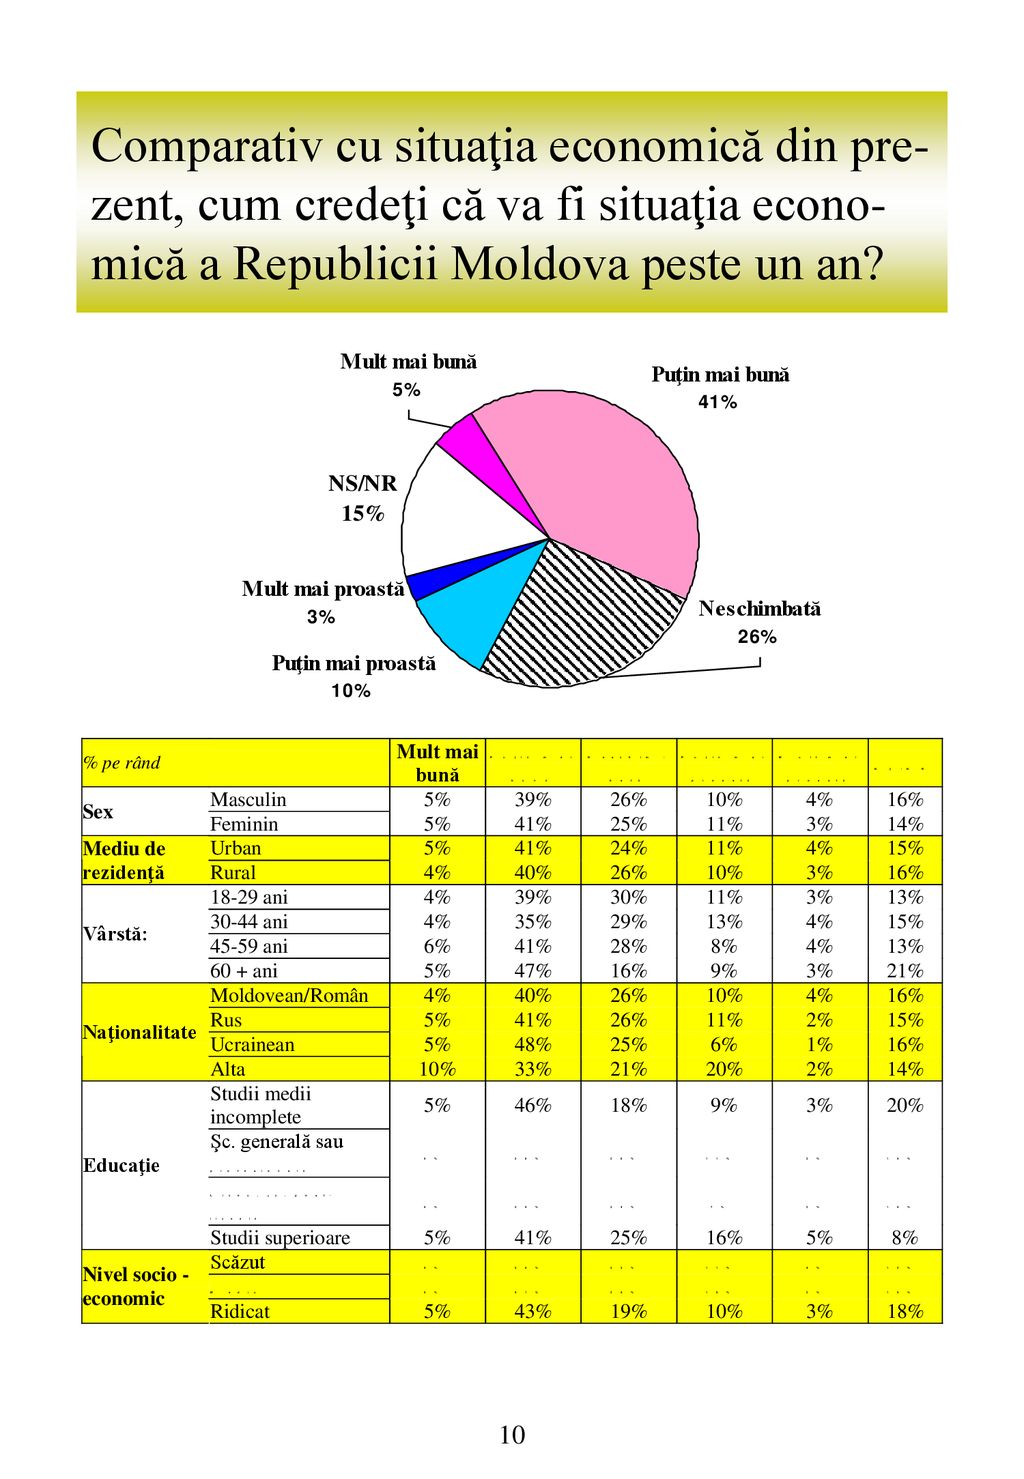 Comparativ cu situaţia economică din pre-zent, cum credeţi că va fi situaţia econo-mică a Republicii Moldova peste un an